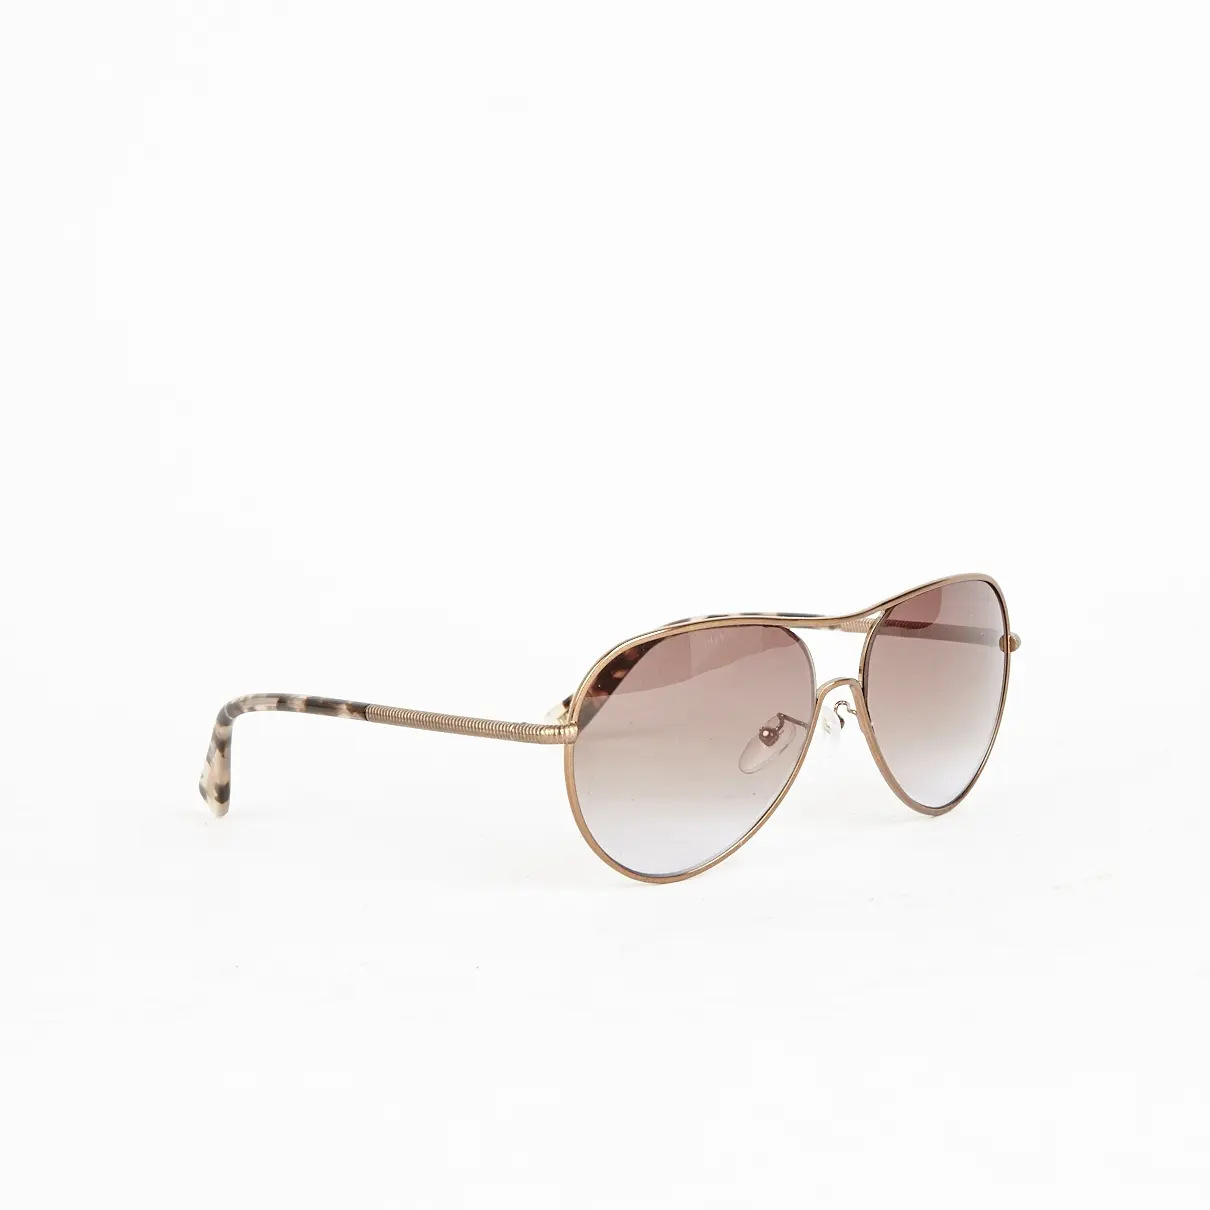 Lanvin sunglasses for sale